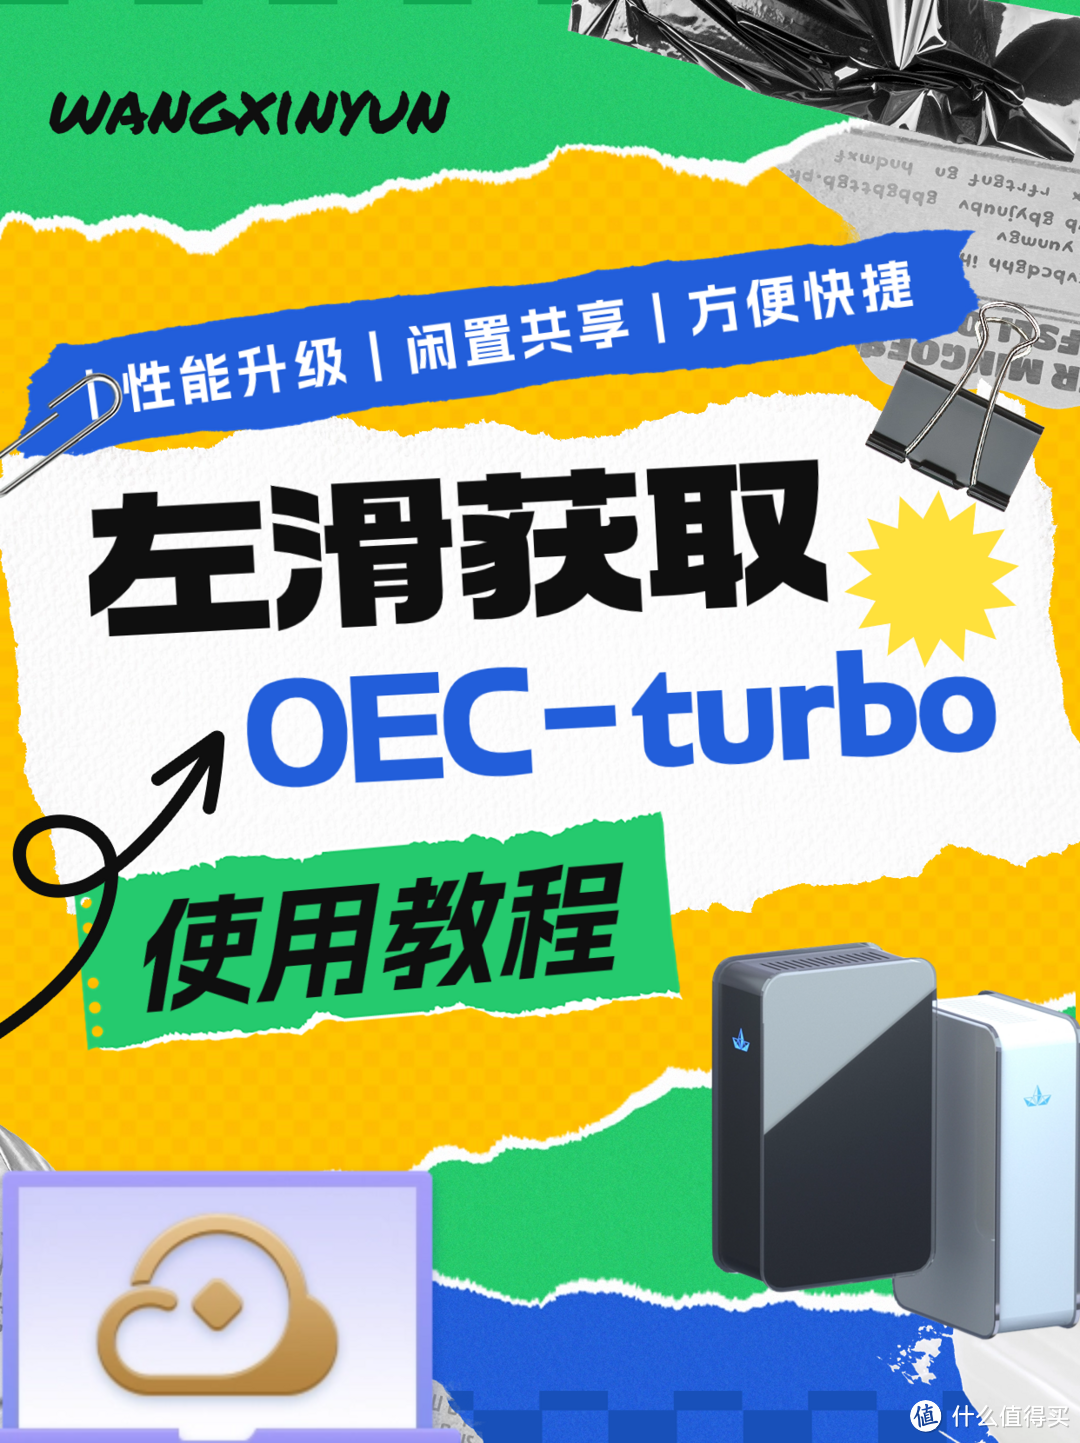 OEC-turbo使用指南~内附福利！